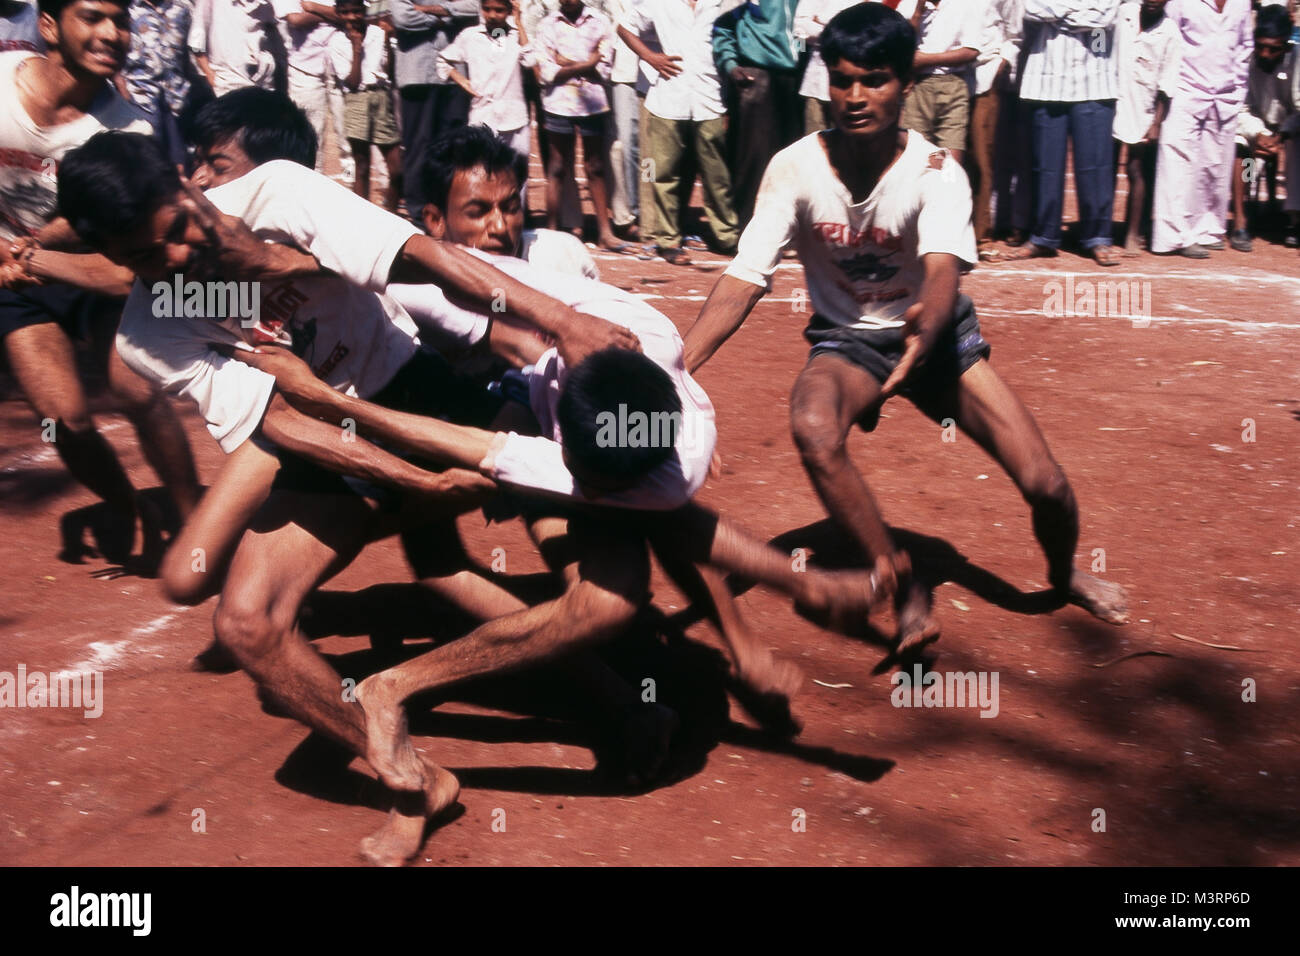 Men playing kabaddi game, India, Asia Stock Photo